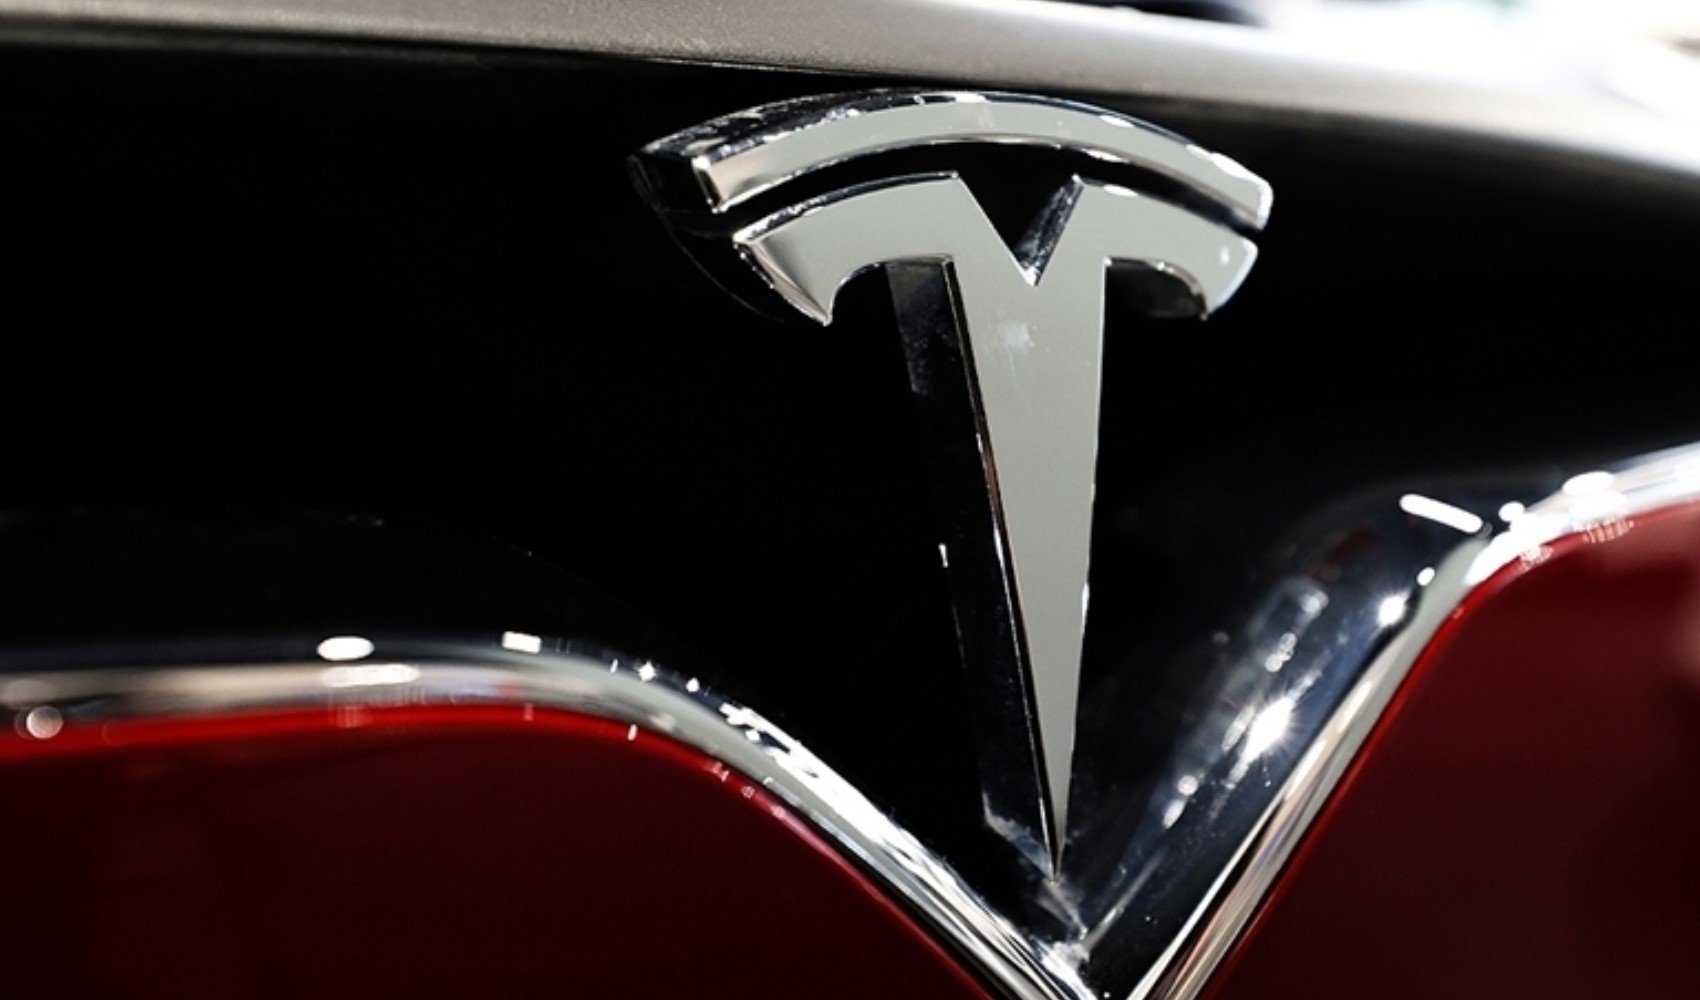 Emniyet kemeri uyarısı nedeniyle Tesla araçlarını geri çağırdı!